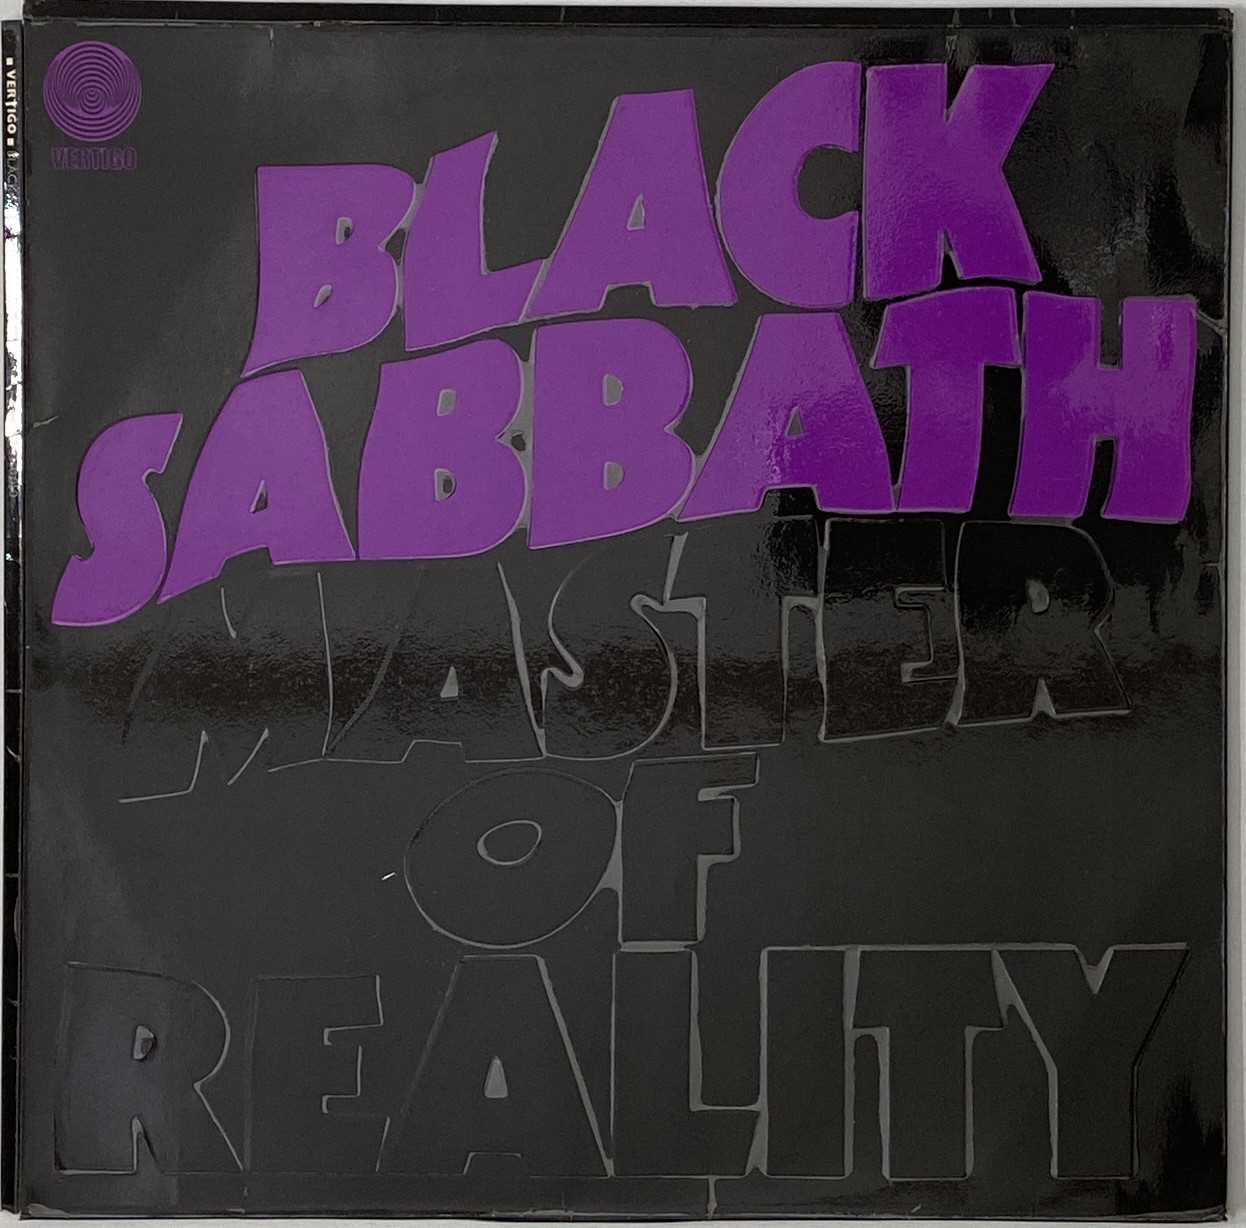 BLACK SABBATH - MASTER OF REALITY LP (ORIGINAL UK COPY COMPLETE WITH POSTER - VERTIGO 6360 050) - Image 3 of 6